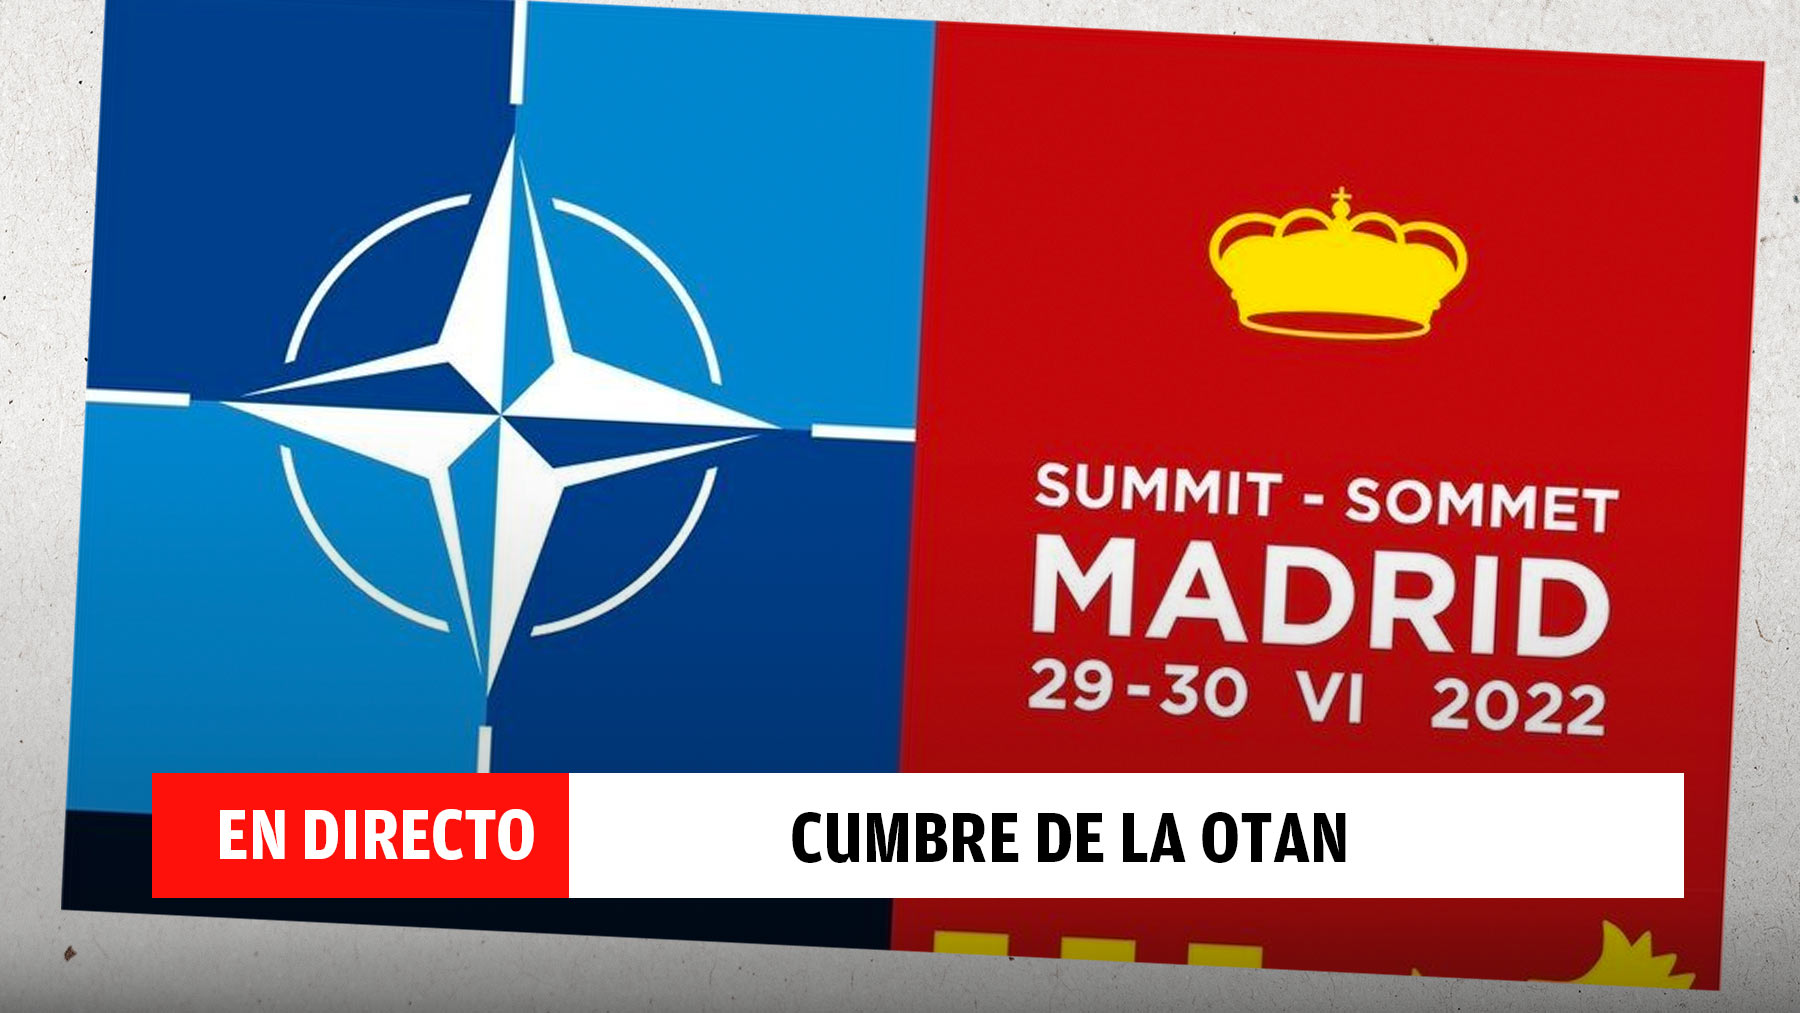 Directo | Última hora de la cumbre de la OTAN 2022: últimas noticias y cortes...